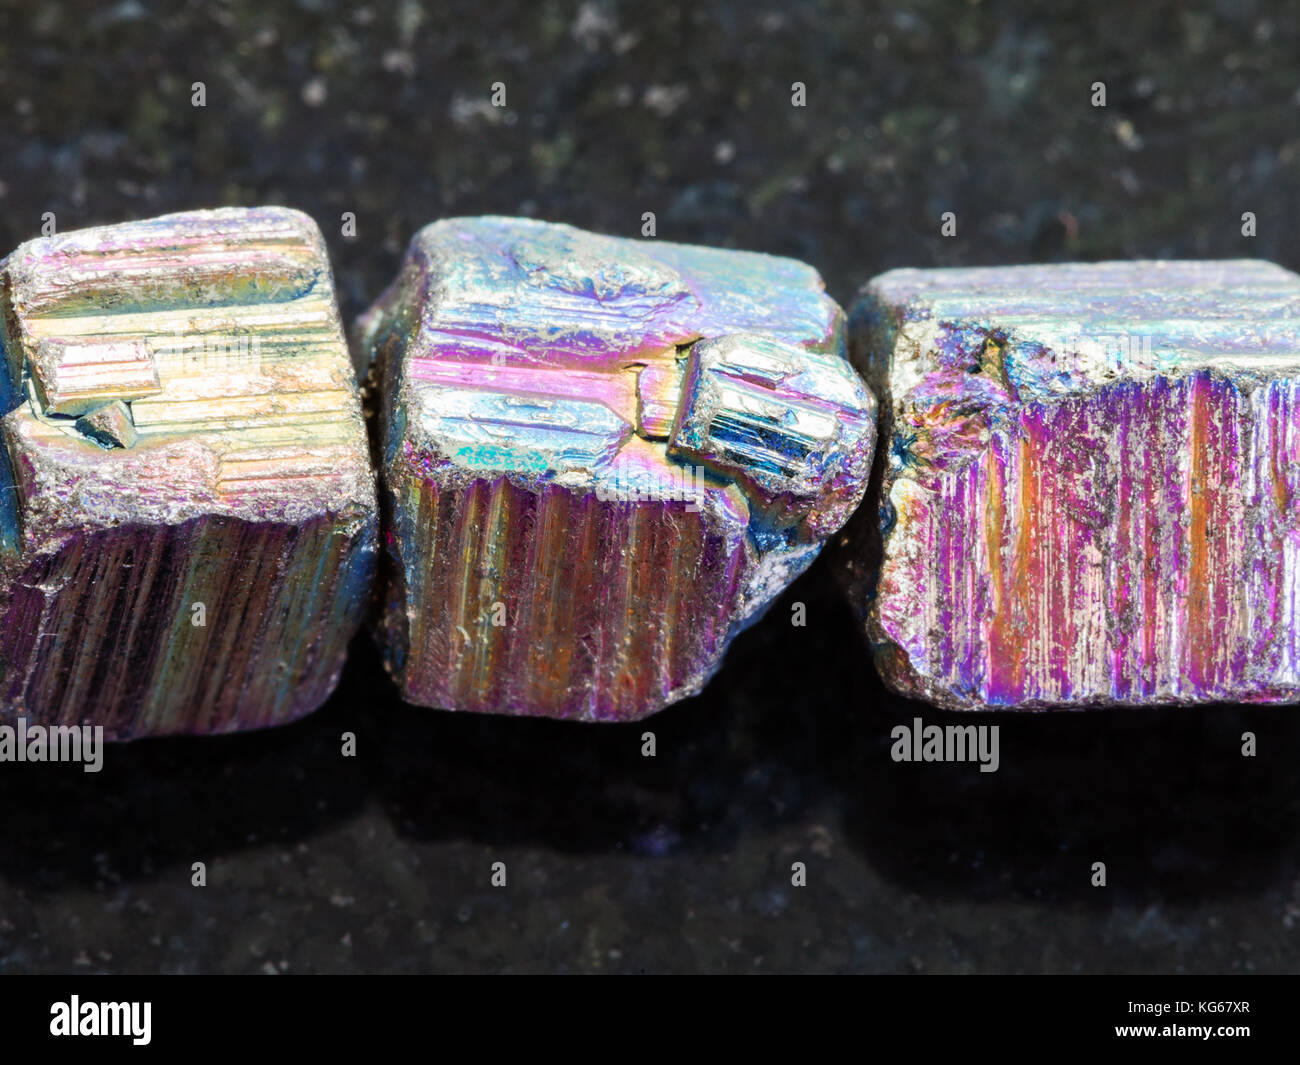 Makroaufnahmen von natürlichen Mineralgestein Muster - Perlen aus irisierendem Pyrit Edelstein auf dunklem Granit Hintergrund Stockfoto